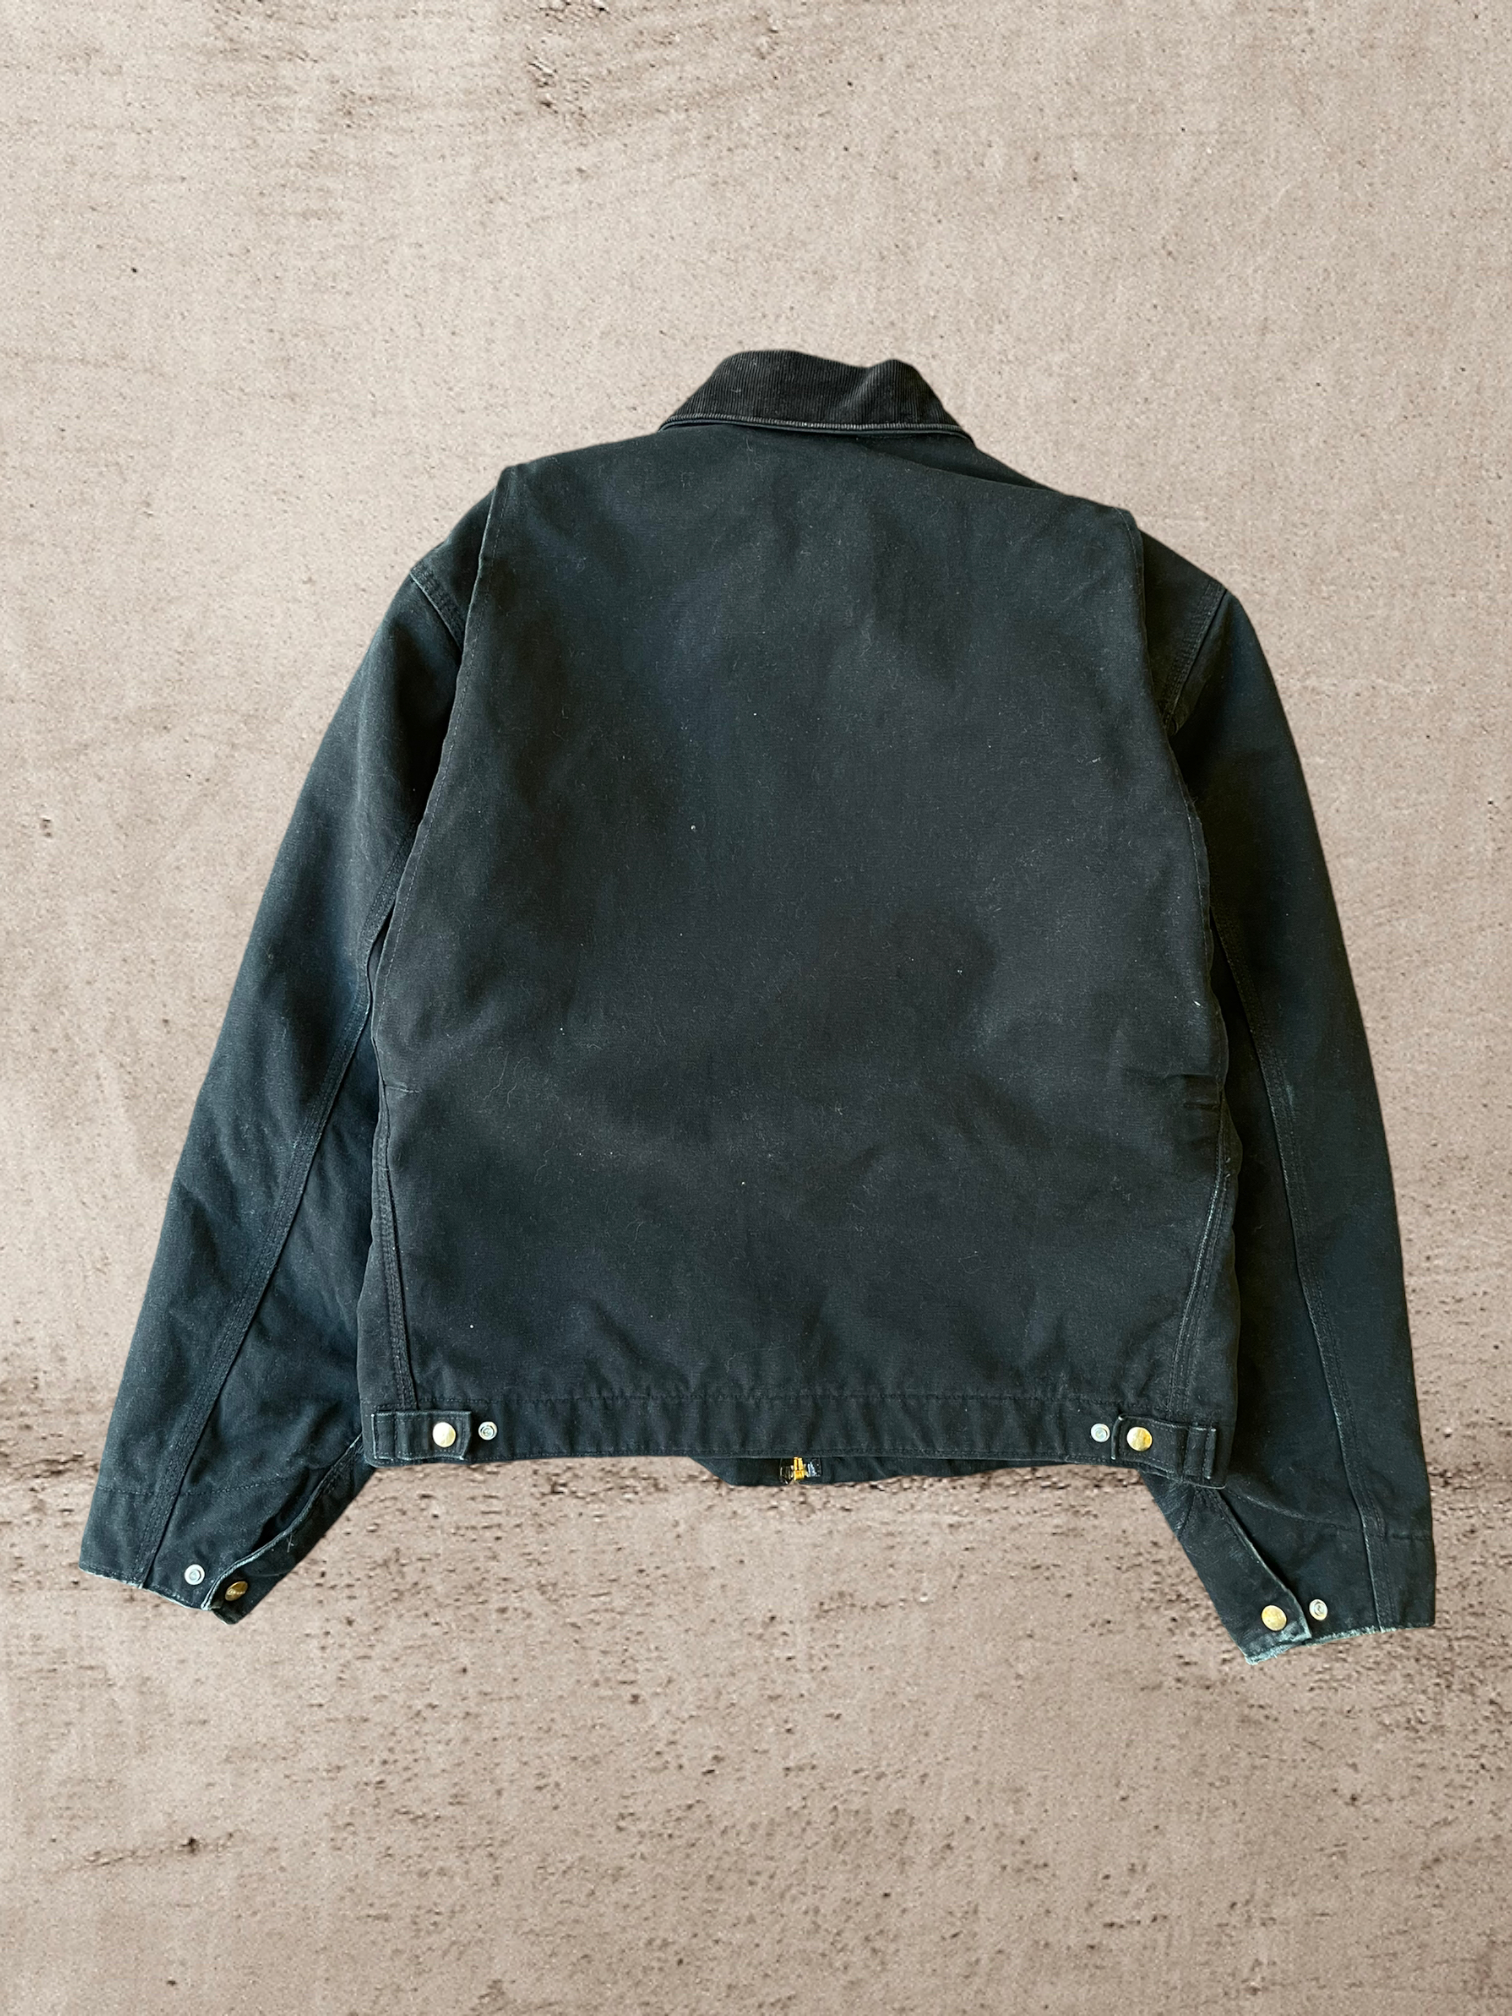 Vintage Carhartt Detroit Lined Jacket - Large